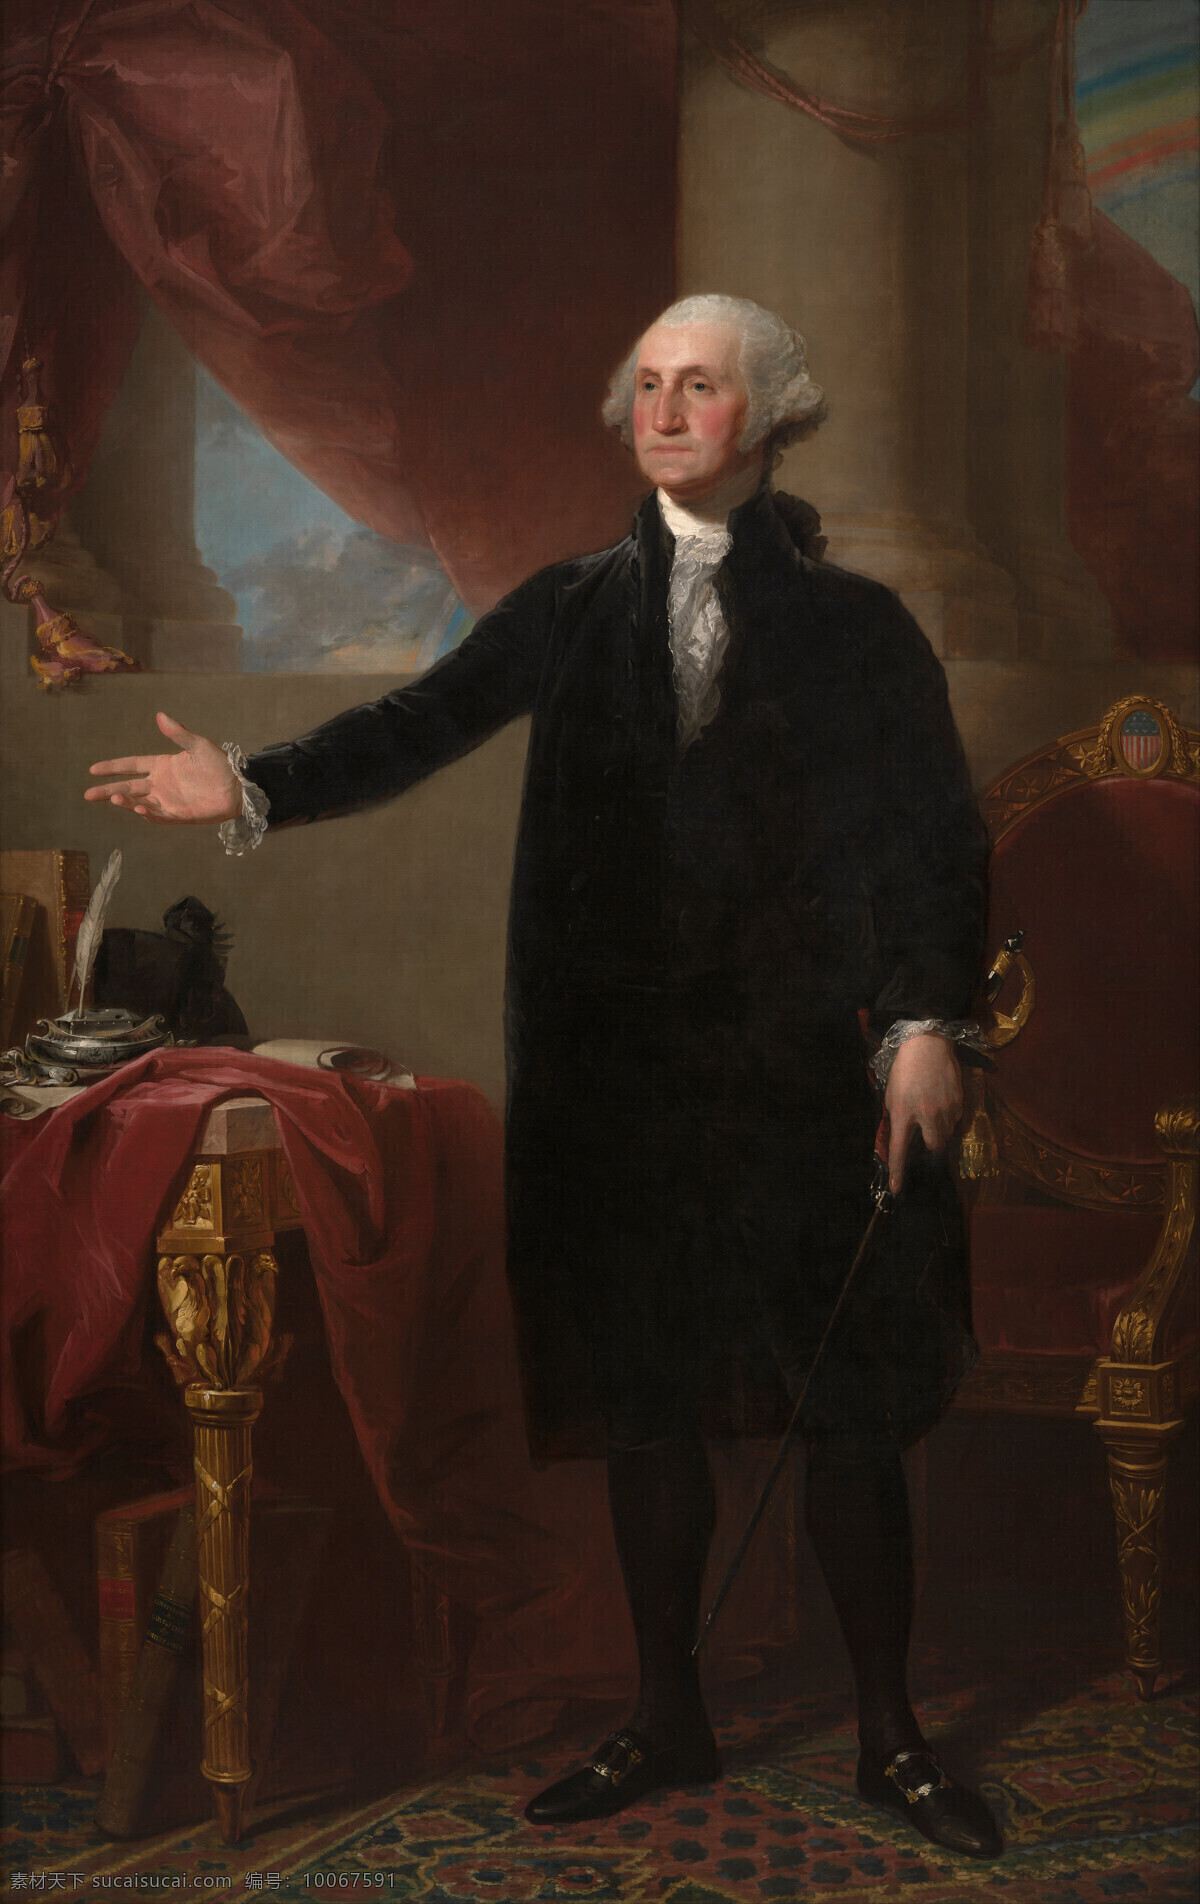 乔治 华成 顿 全身像 吉伯特 斯图尔特 作品 美国第 任总 统 矿工之子 种植园主 独立战争 古典油画 油画 绘画书法 文化艺术